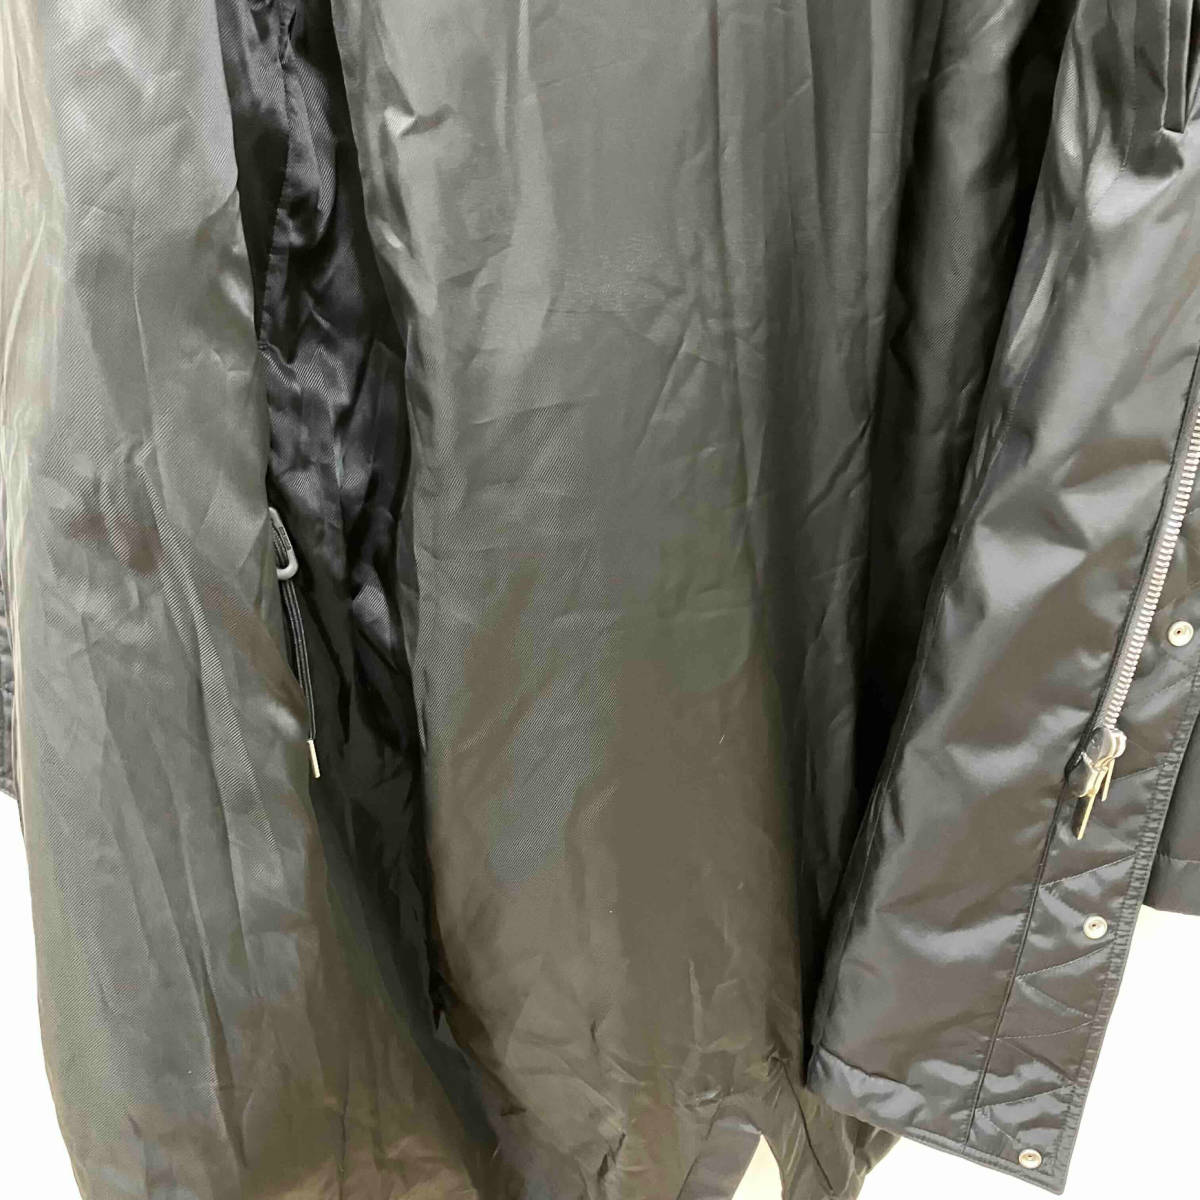 DIOR HOMME Dior Homme с мехом Mod's Coat черный размер 50 51614 двойной Zip магазин квитанция возможно 